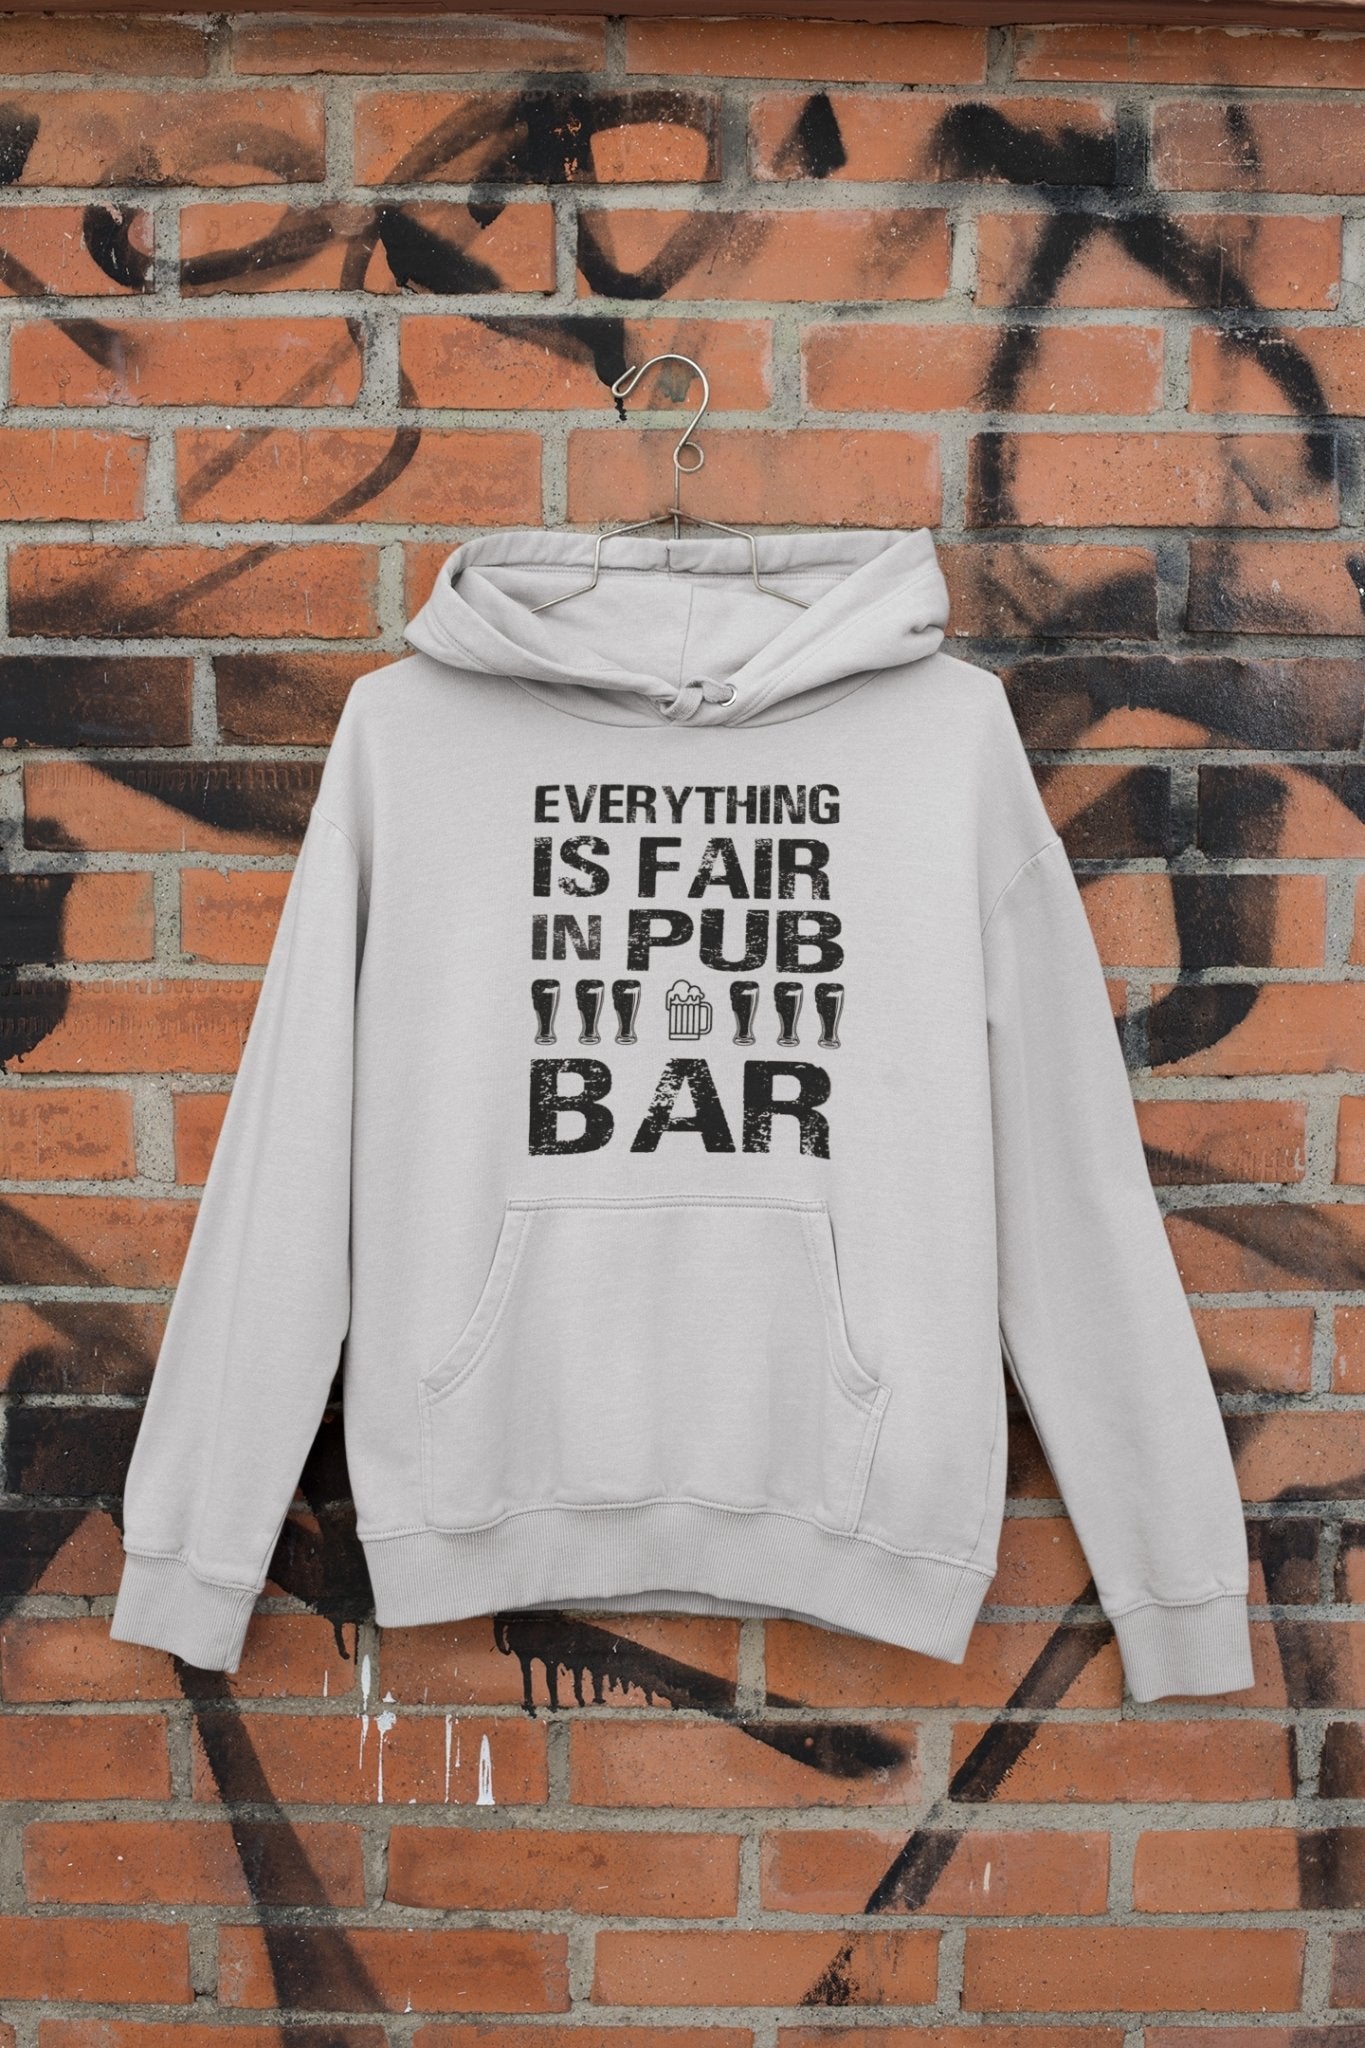 Everthing Is Fair In Pub And Bar Hoodies for Women-FunkyTeesClub - Funky Tees Club